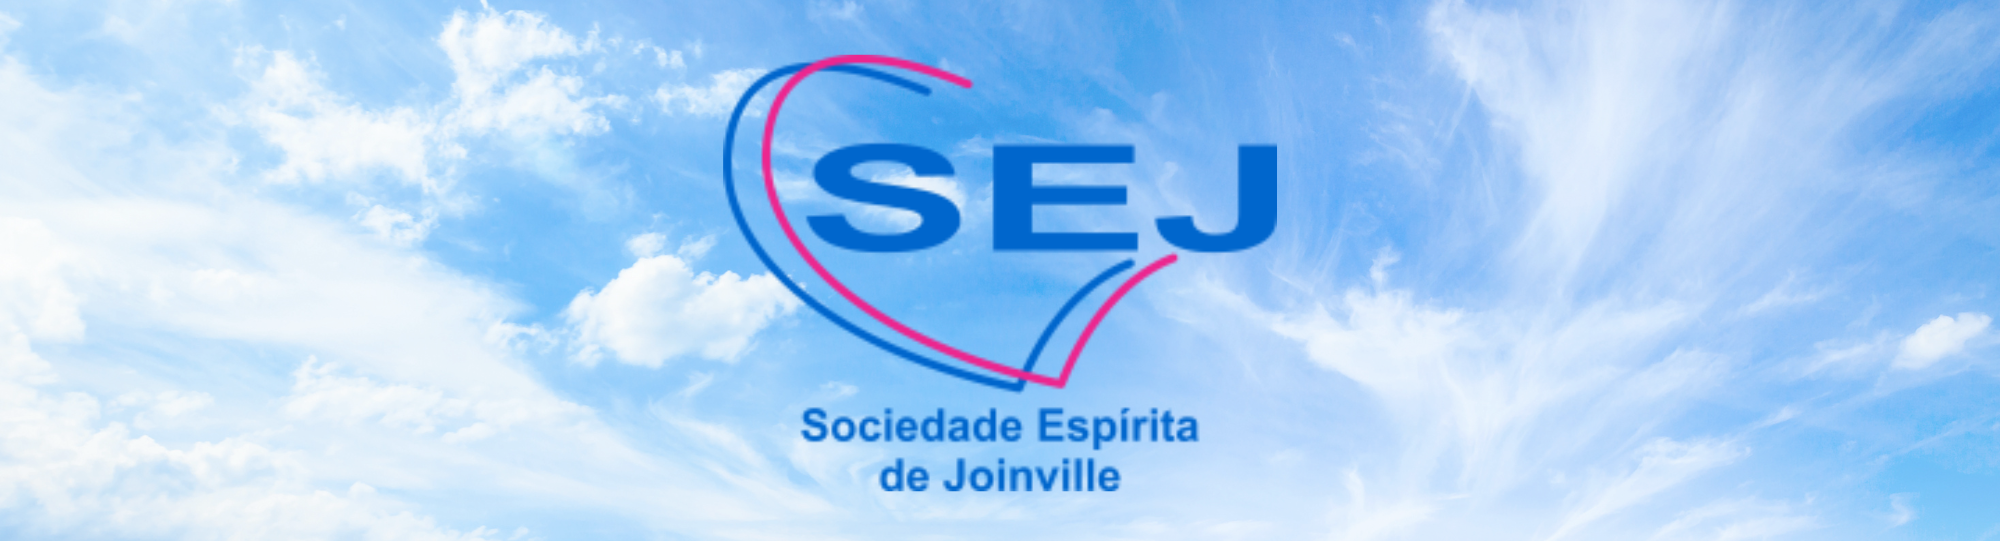 Sociedade Espírita de Joinville